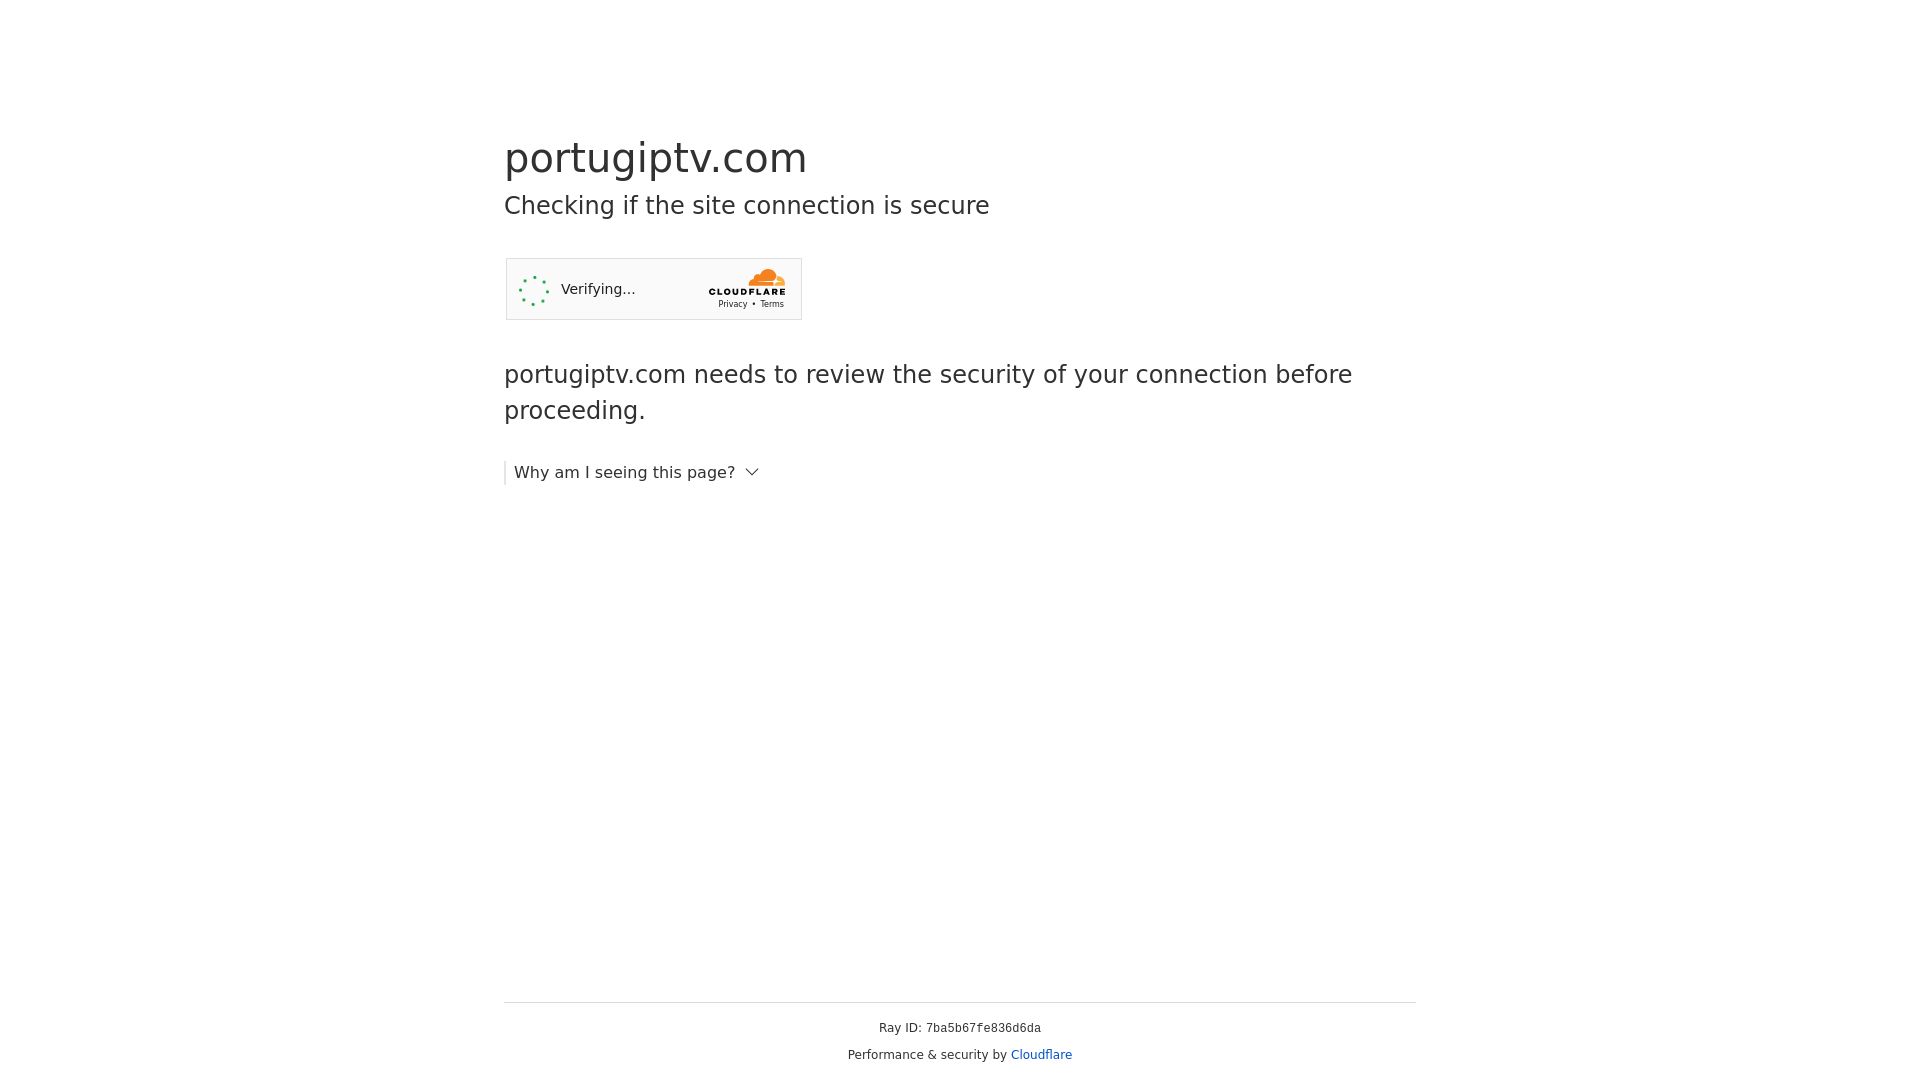 Estado web portugiptv.com está   ONLINE